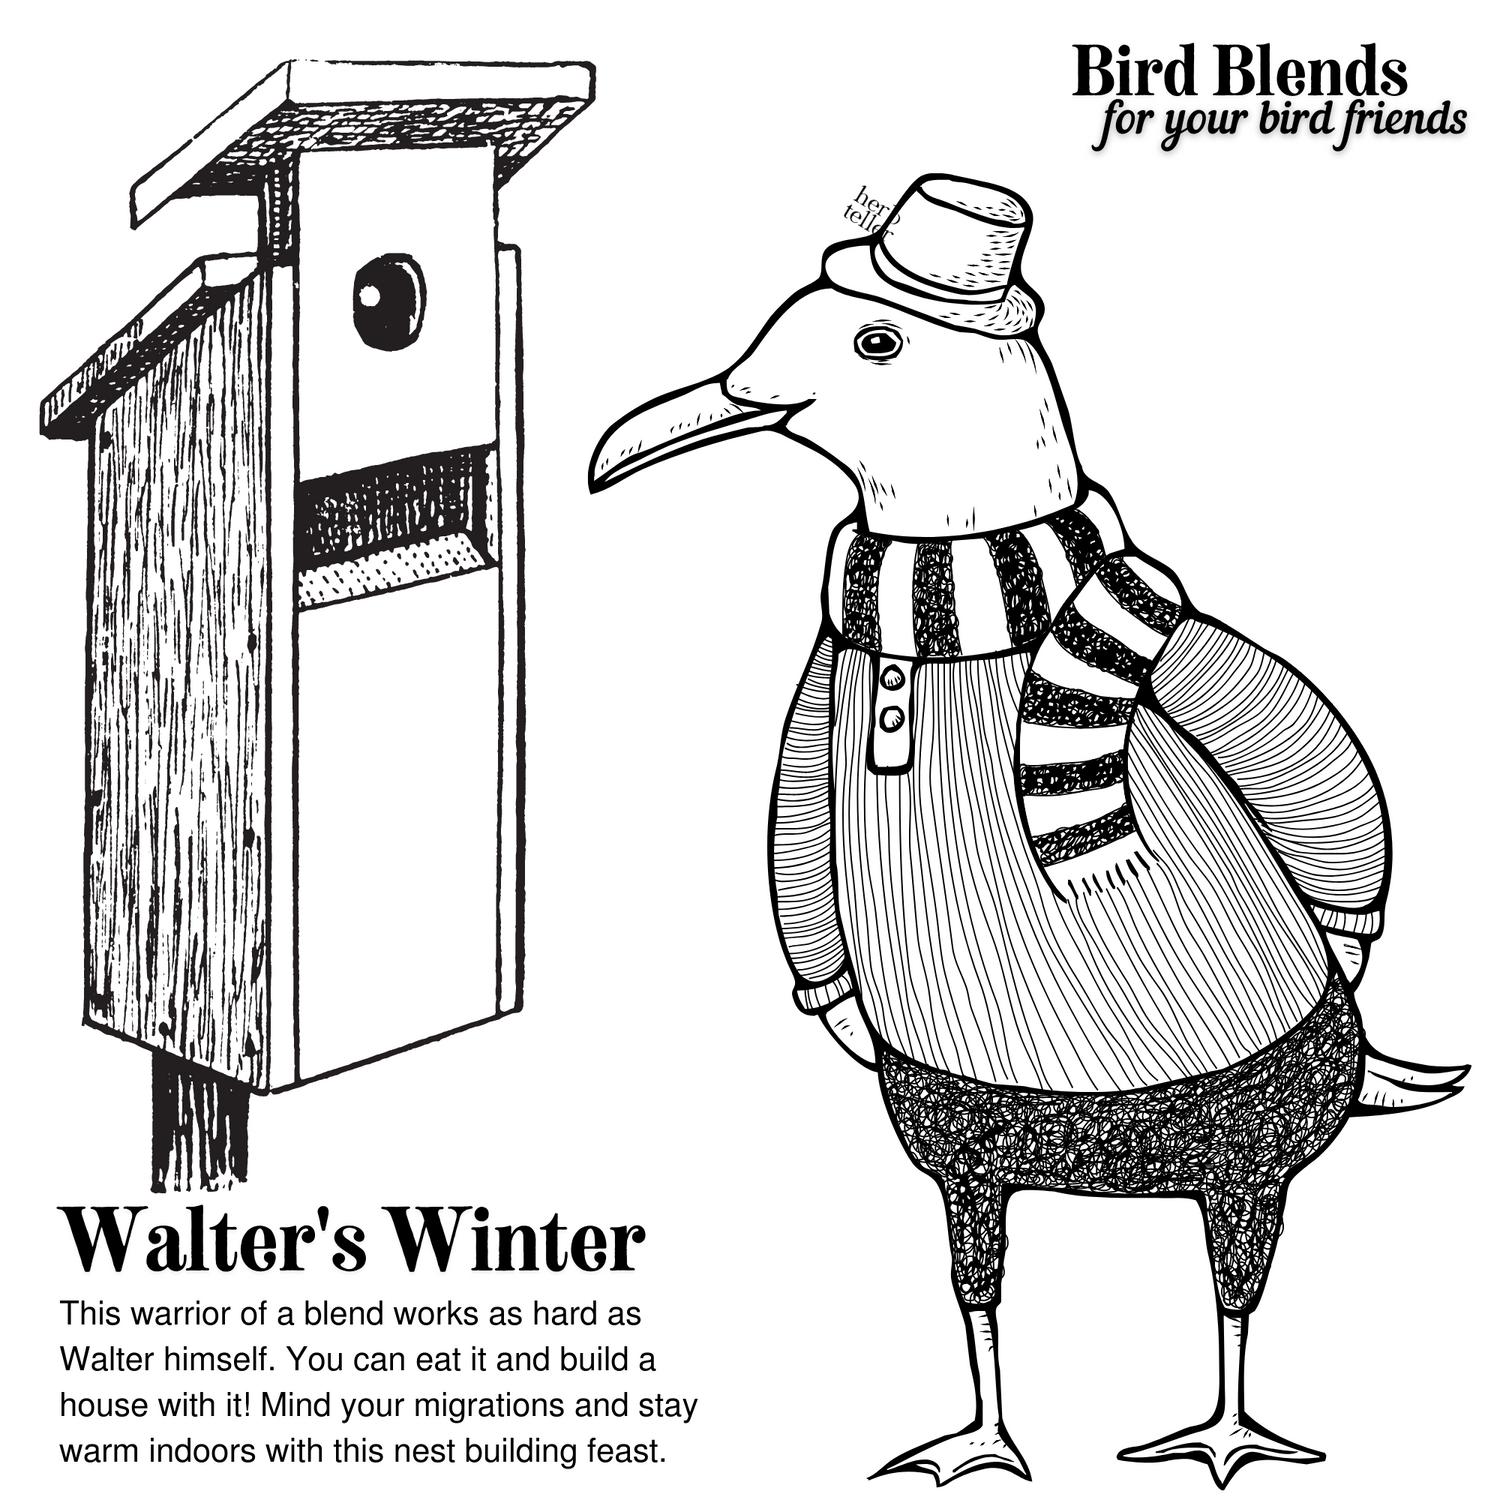 Walter's Winter Blend| Bird Blends for your Bird Friends | Herbal Bird Seed Mix - Original City Apothecary